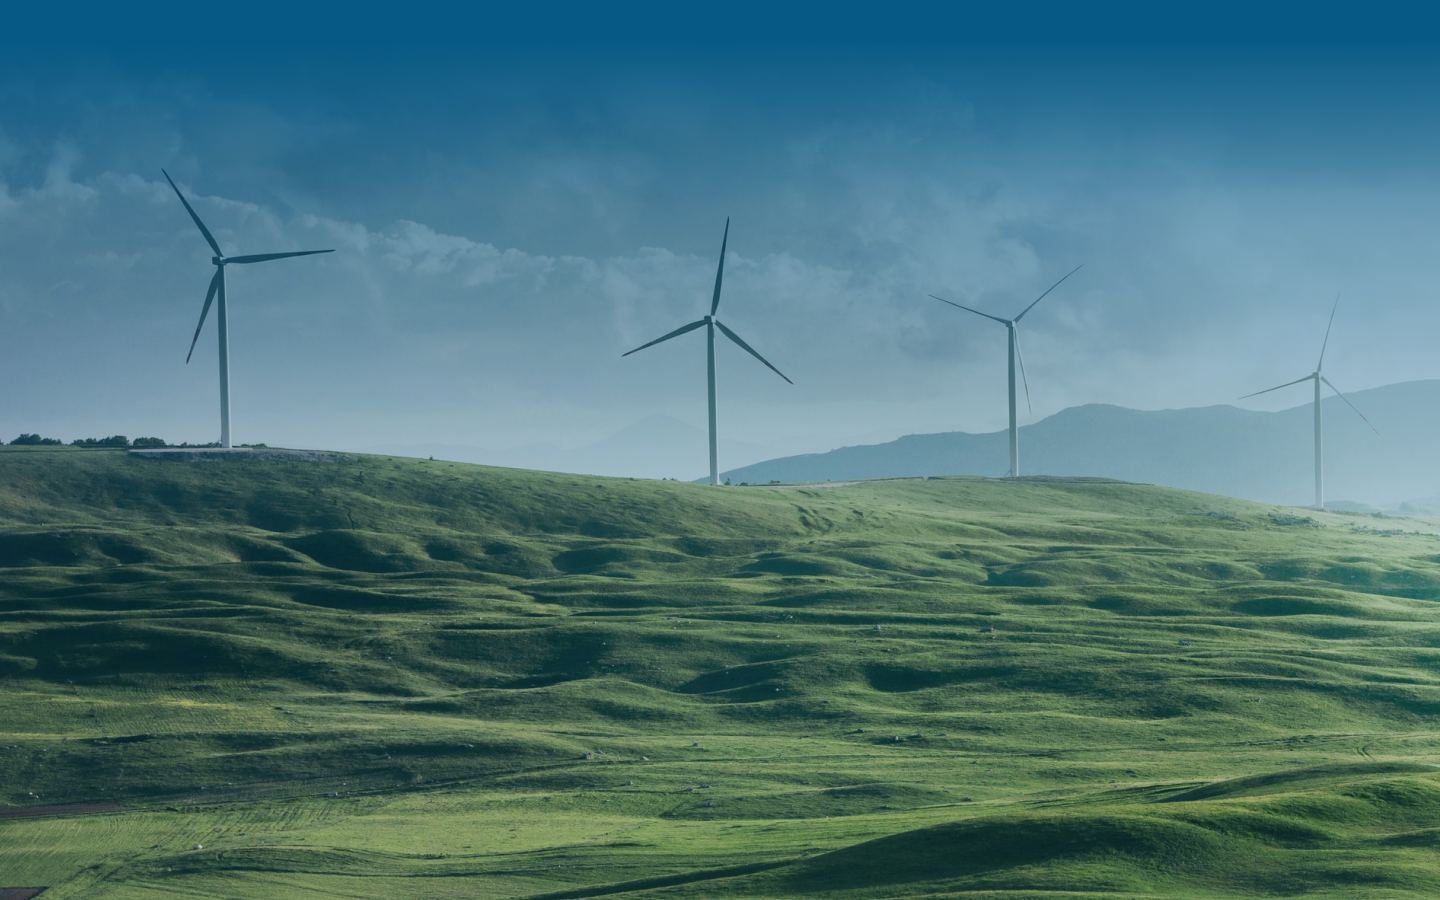 A set of windmills in an open field.